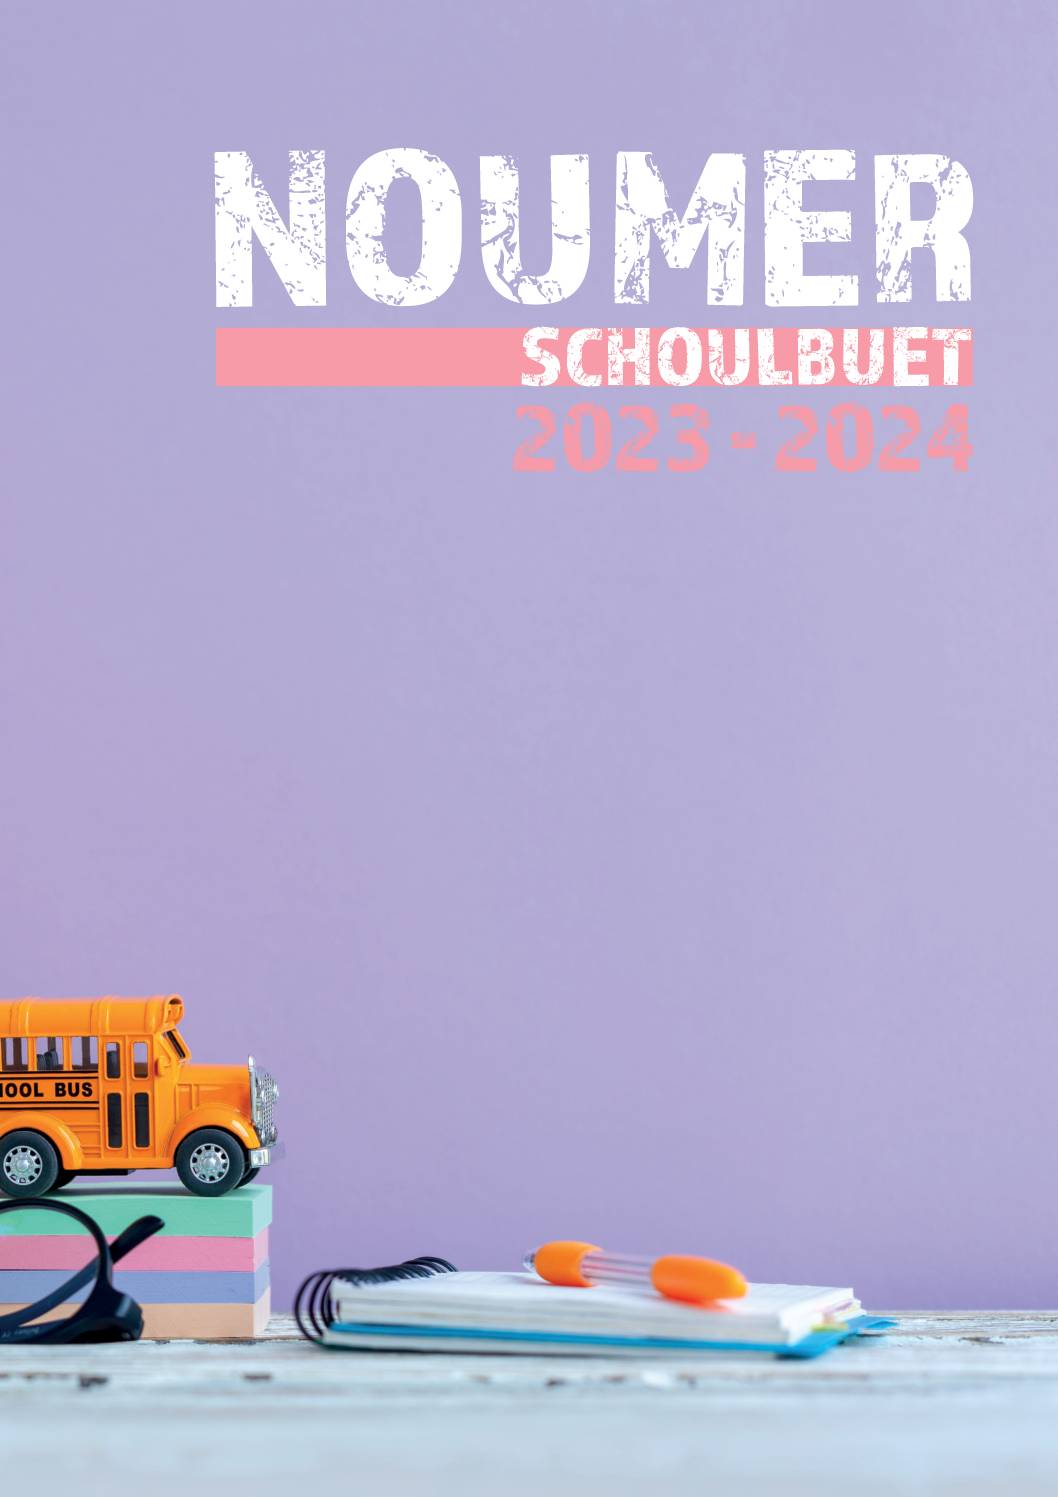 Schoulbuet 2023-2024